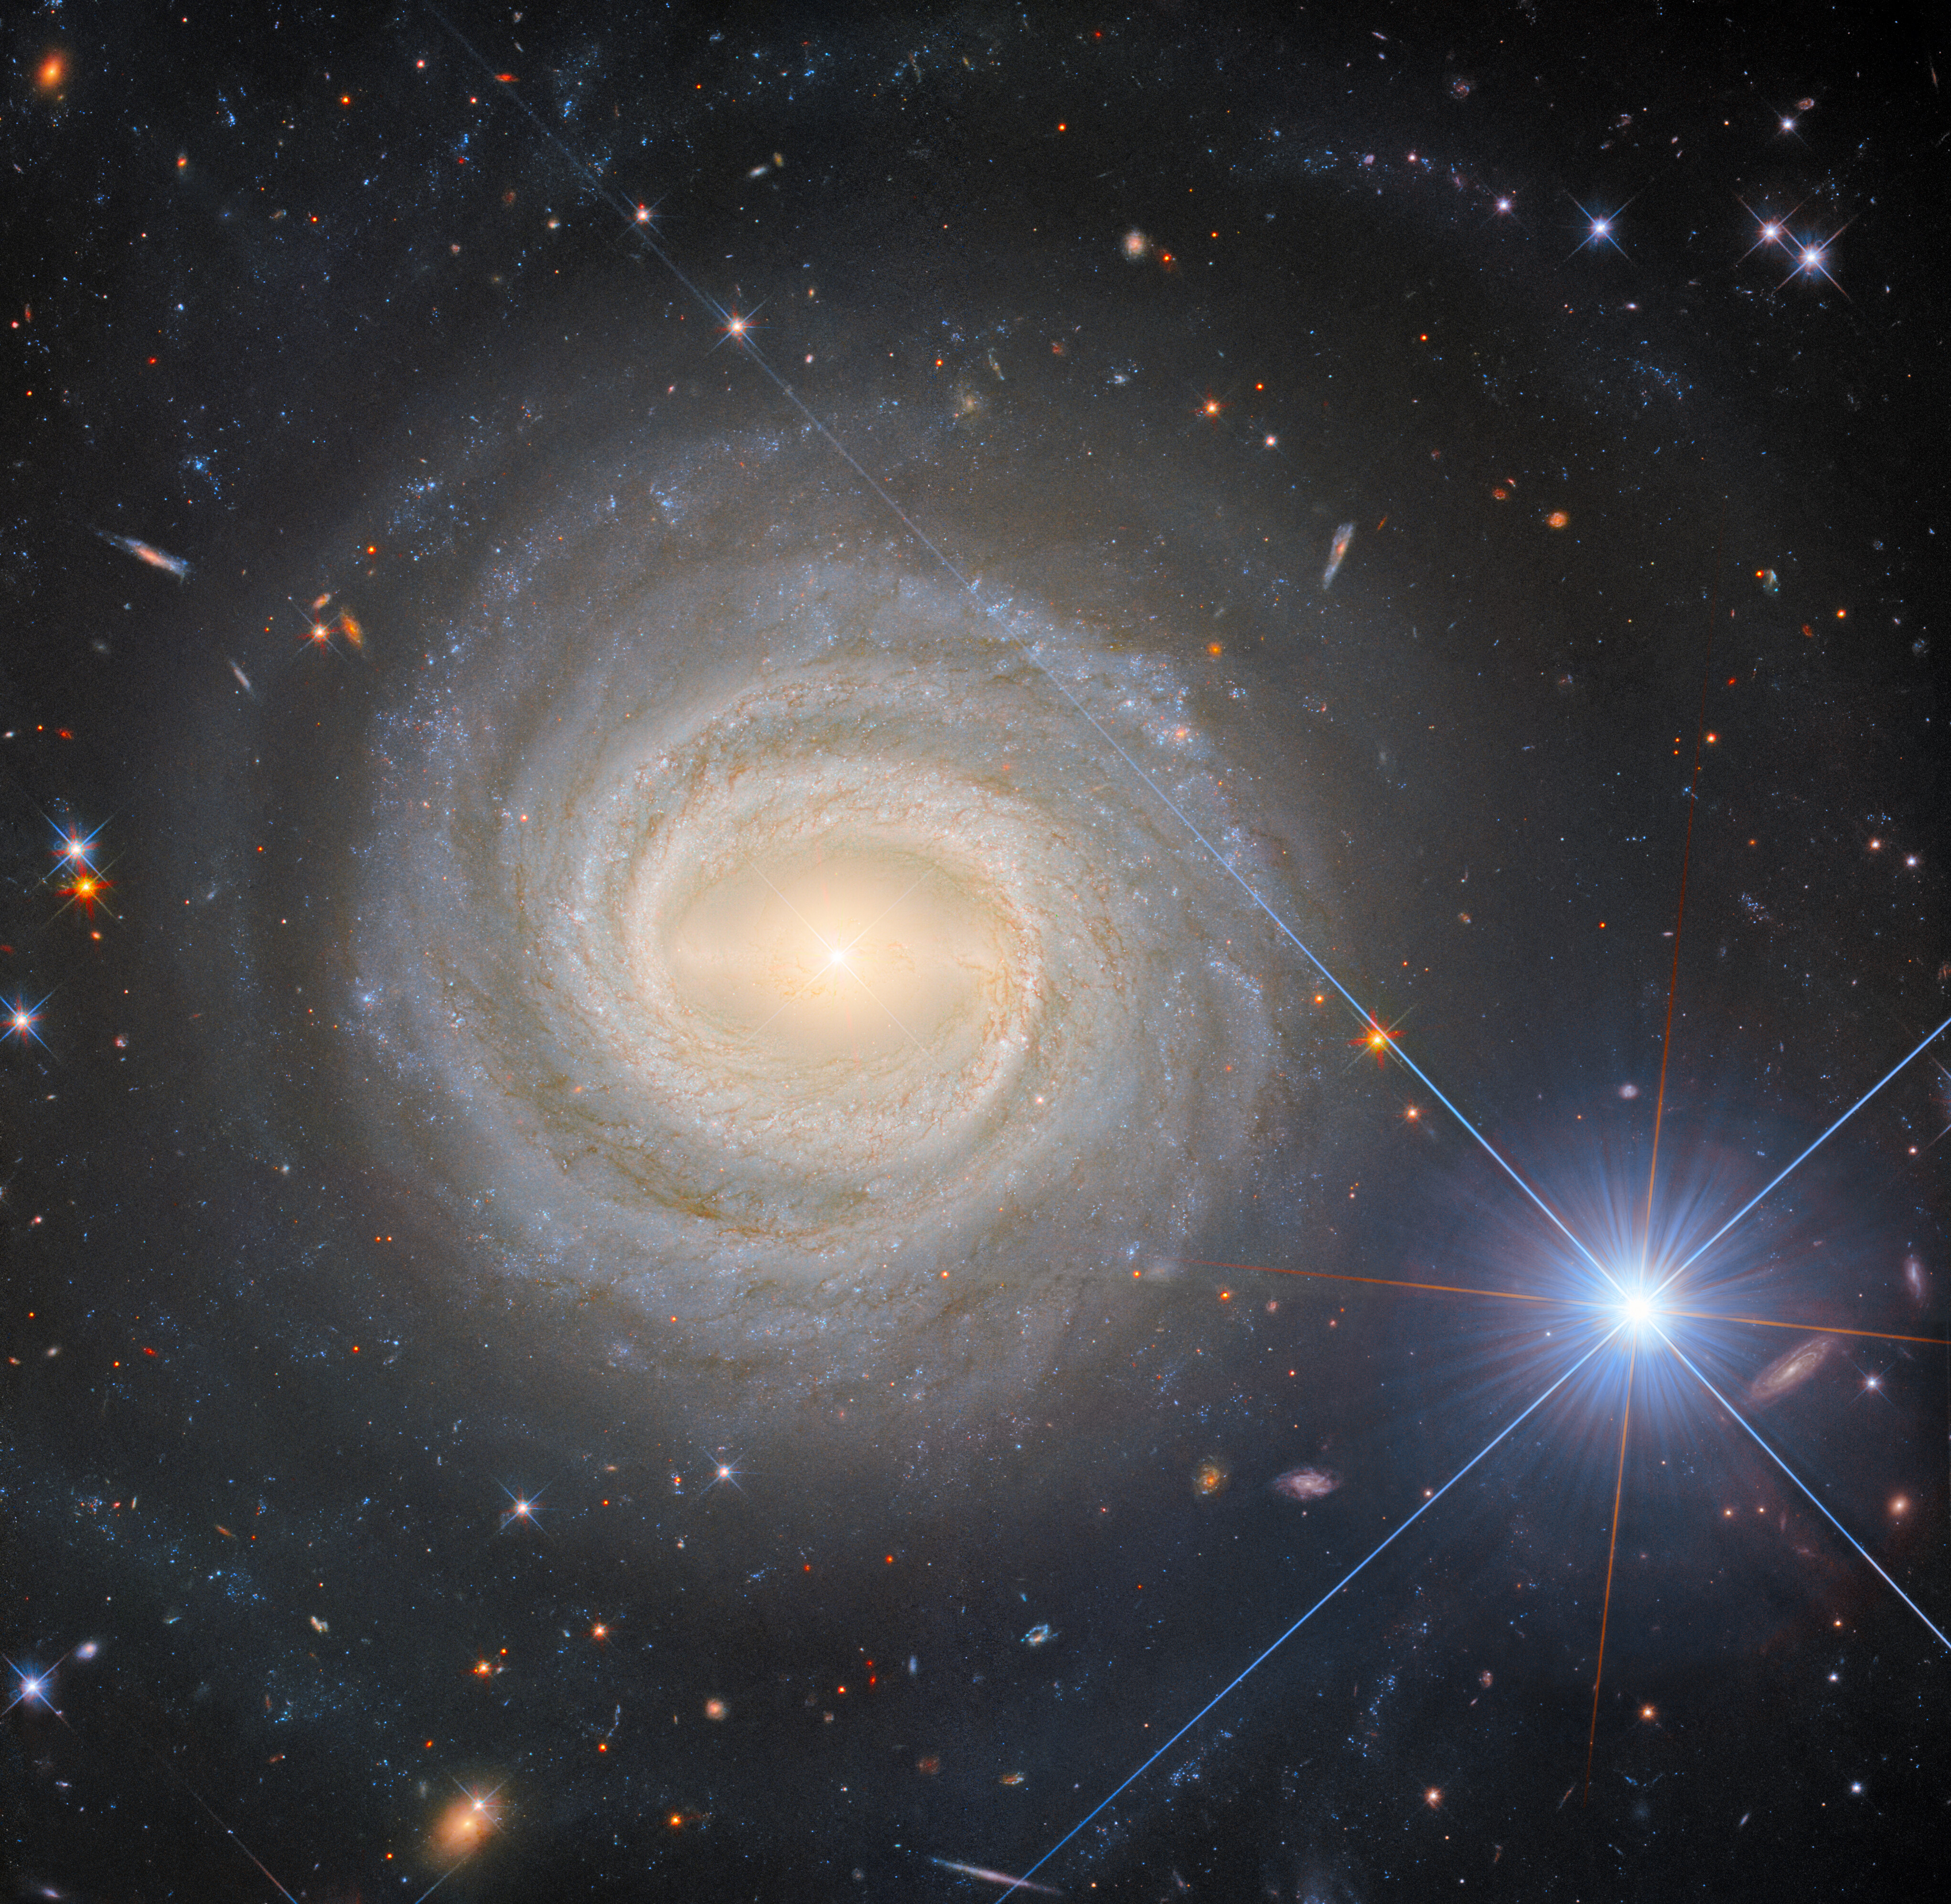 Una galaxia espiral, vista de frente al espectador. El centro brillante de la galaxia está atravesado por una barra brillante y está rodeado por brazos espirales fuertemente enrollados, formando una forma circular con bordes relativamente claros. Galaxias lejanas son visibles a su alrededor, junto con algunas estrellas brillantes, sobre un fondo oscuro. Una estrella a la derecha de la galaxia es muy grande y extremadamente brillante con largos picos de difracción.